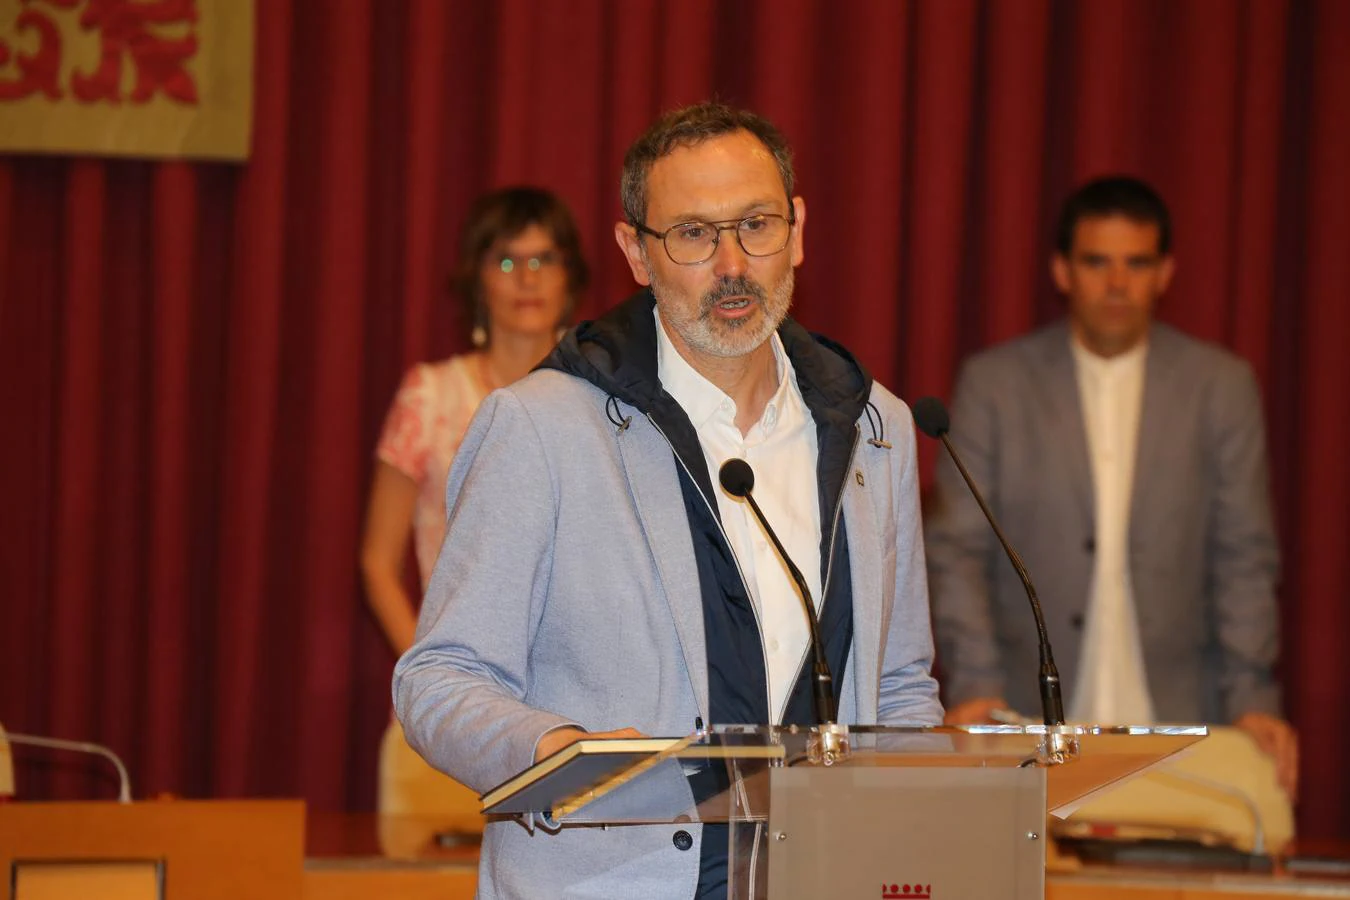 Fotos: Hermoso de Mendoza, nuevo alcalde de Logroño: el acto (1 de 3)